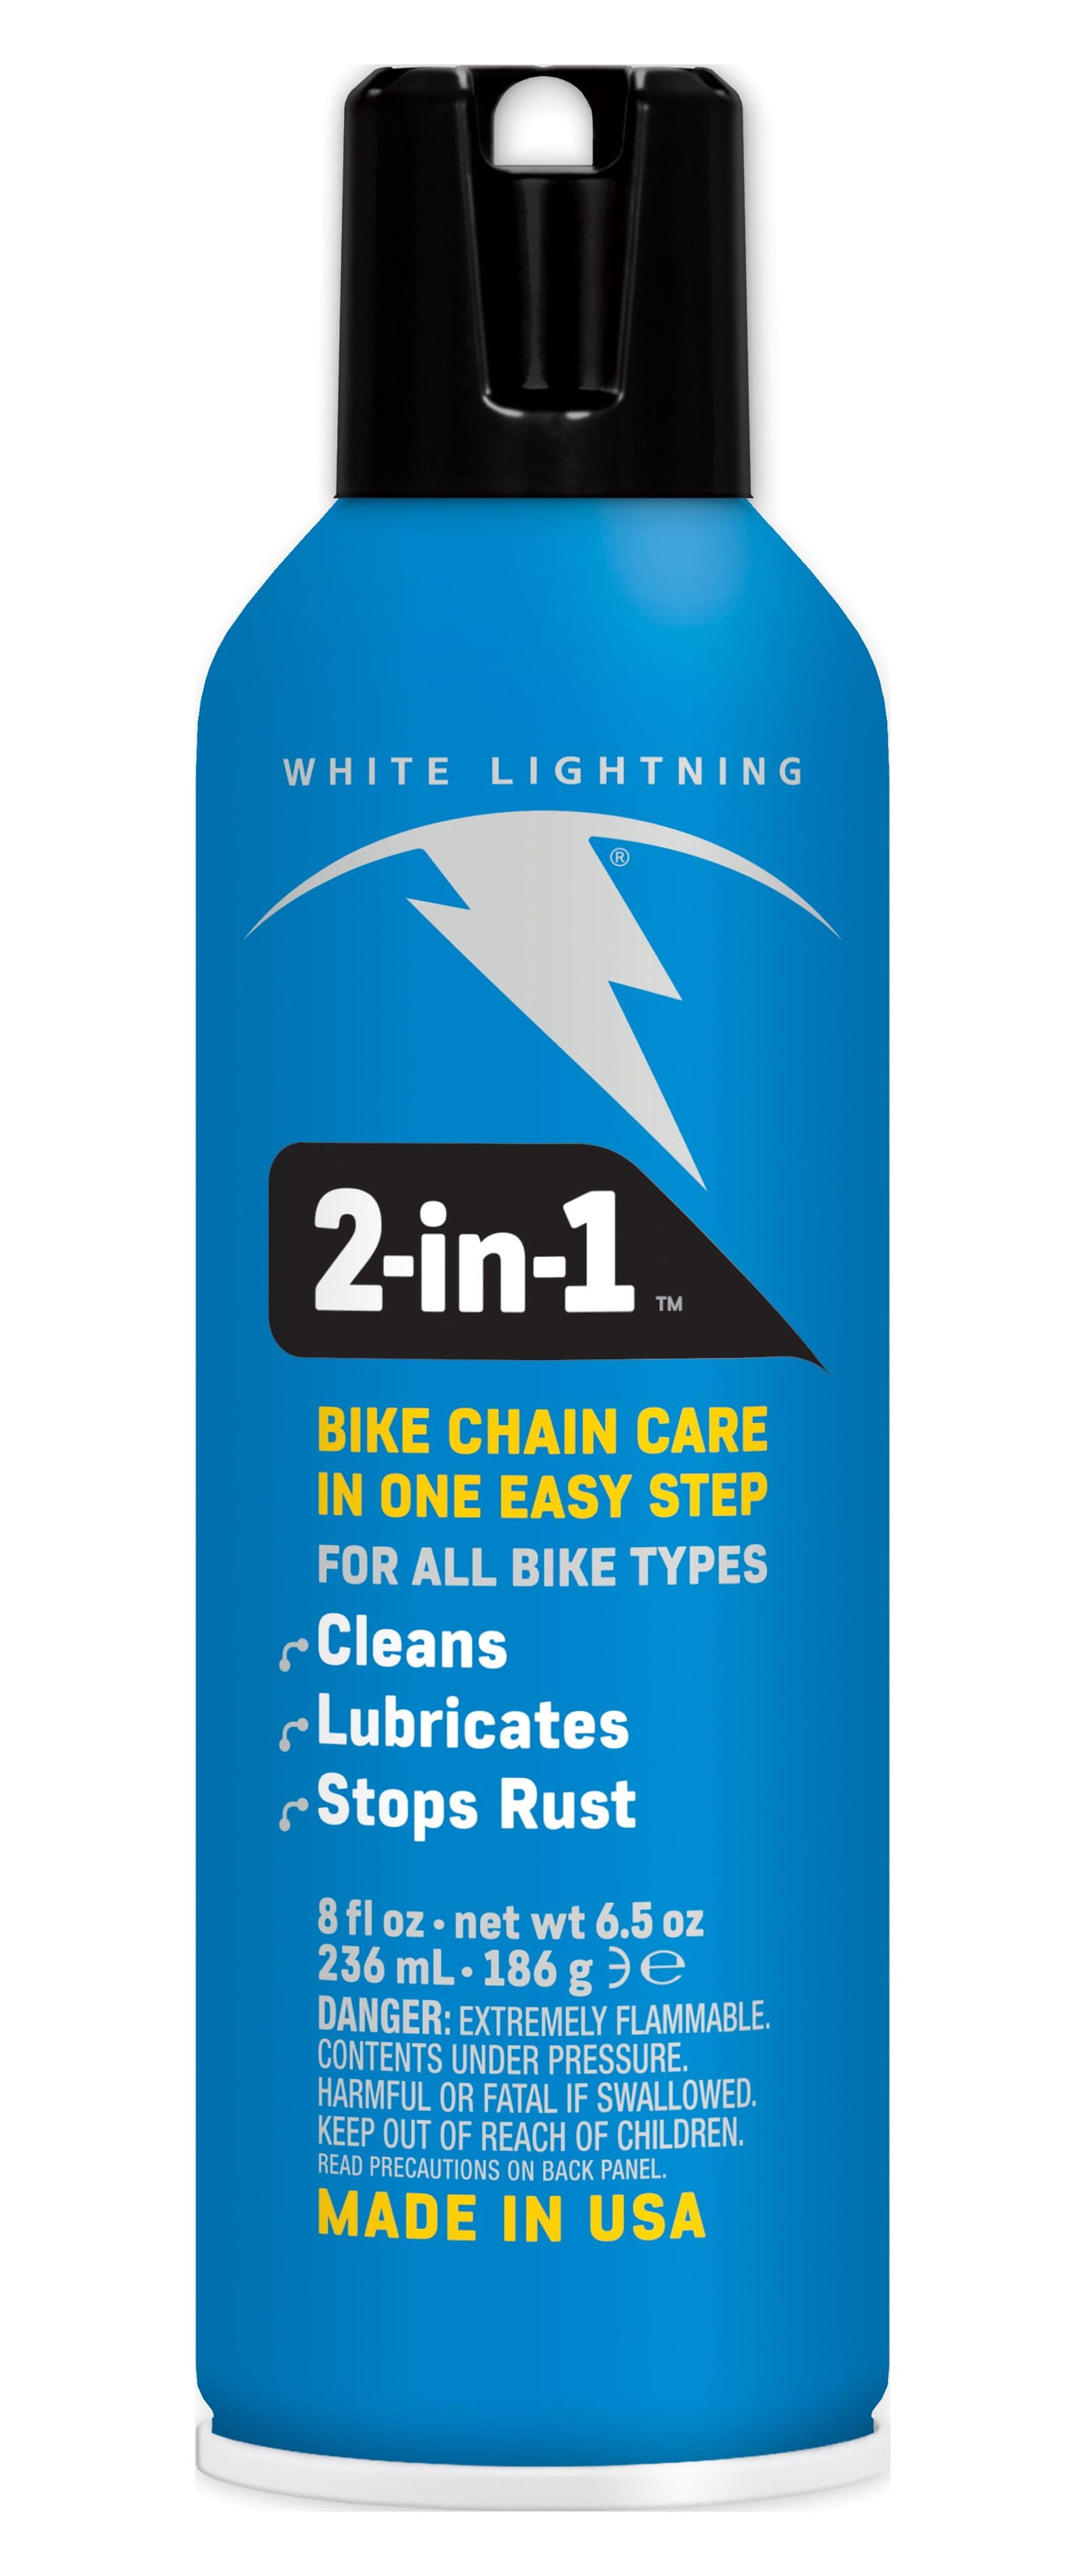 White Lightning Trigger Chain Cleaner - Modern Bike